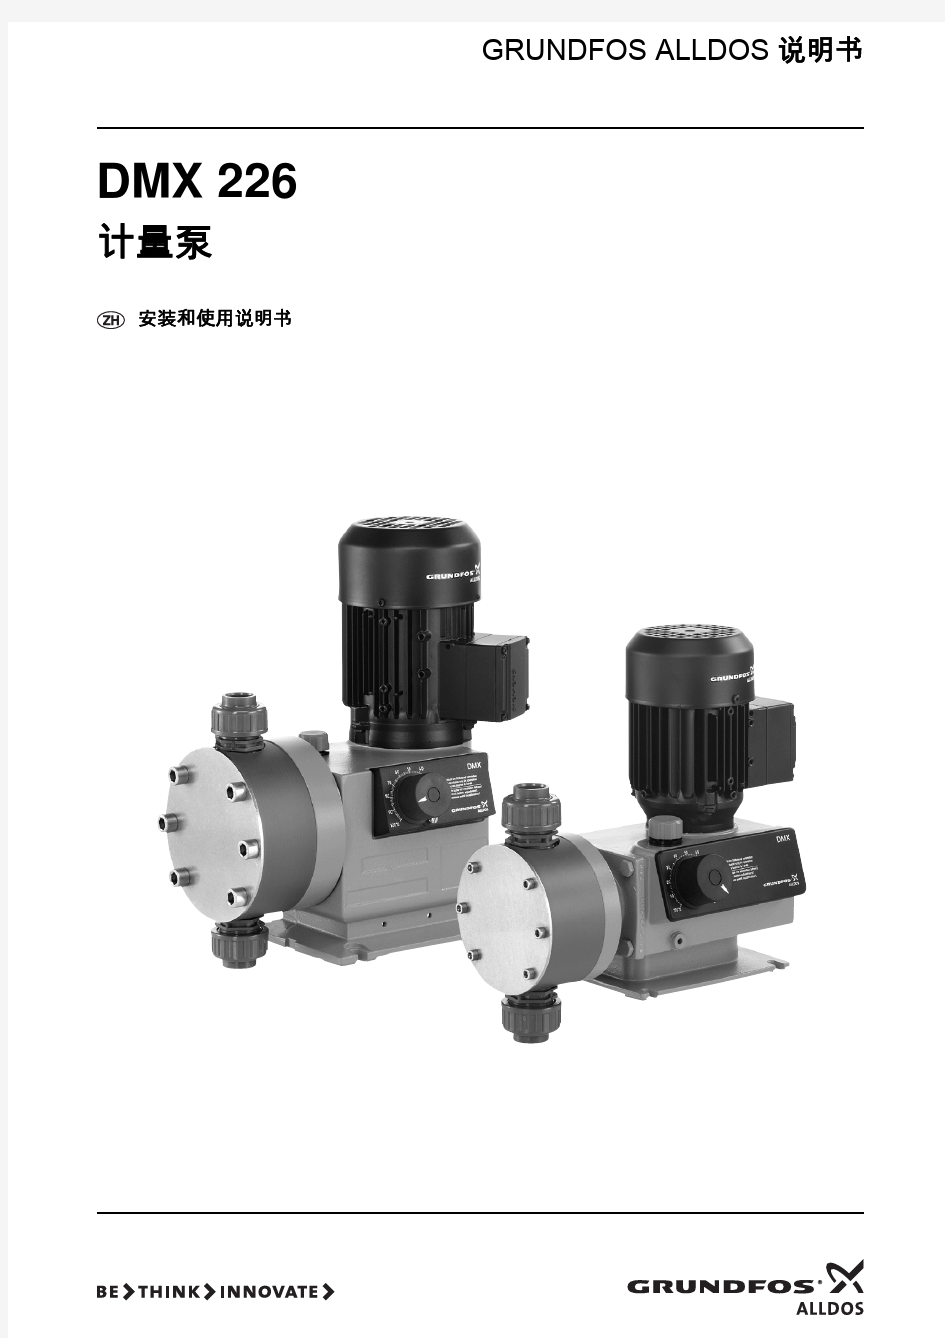 格兰富DMX系列隔膜计量泵产品说明(中文版)